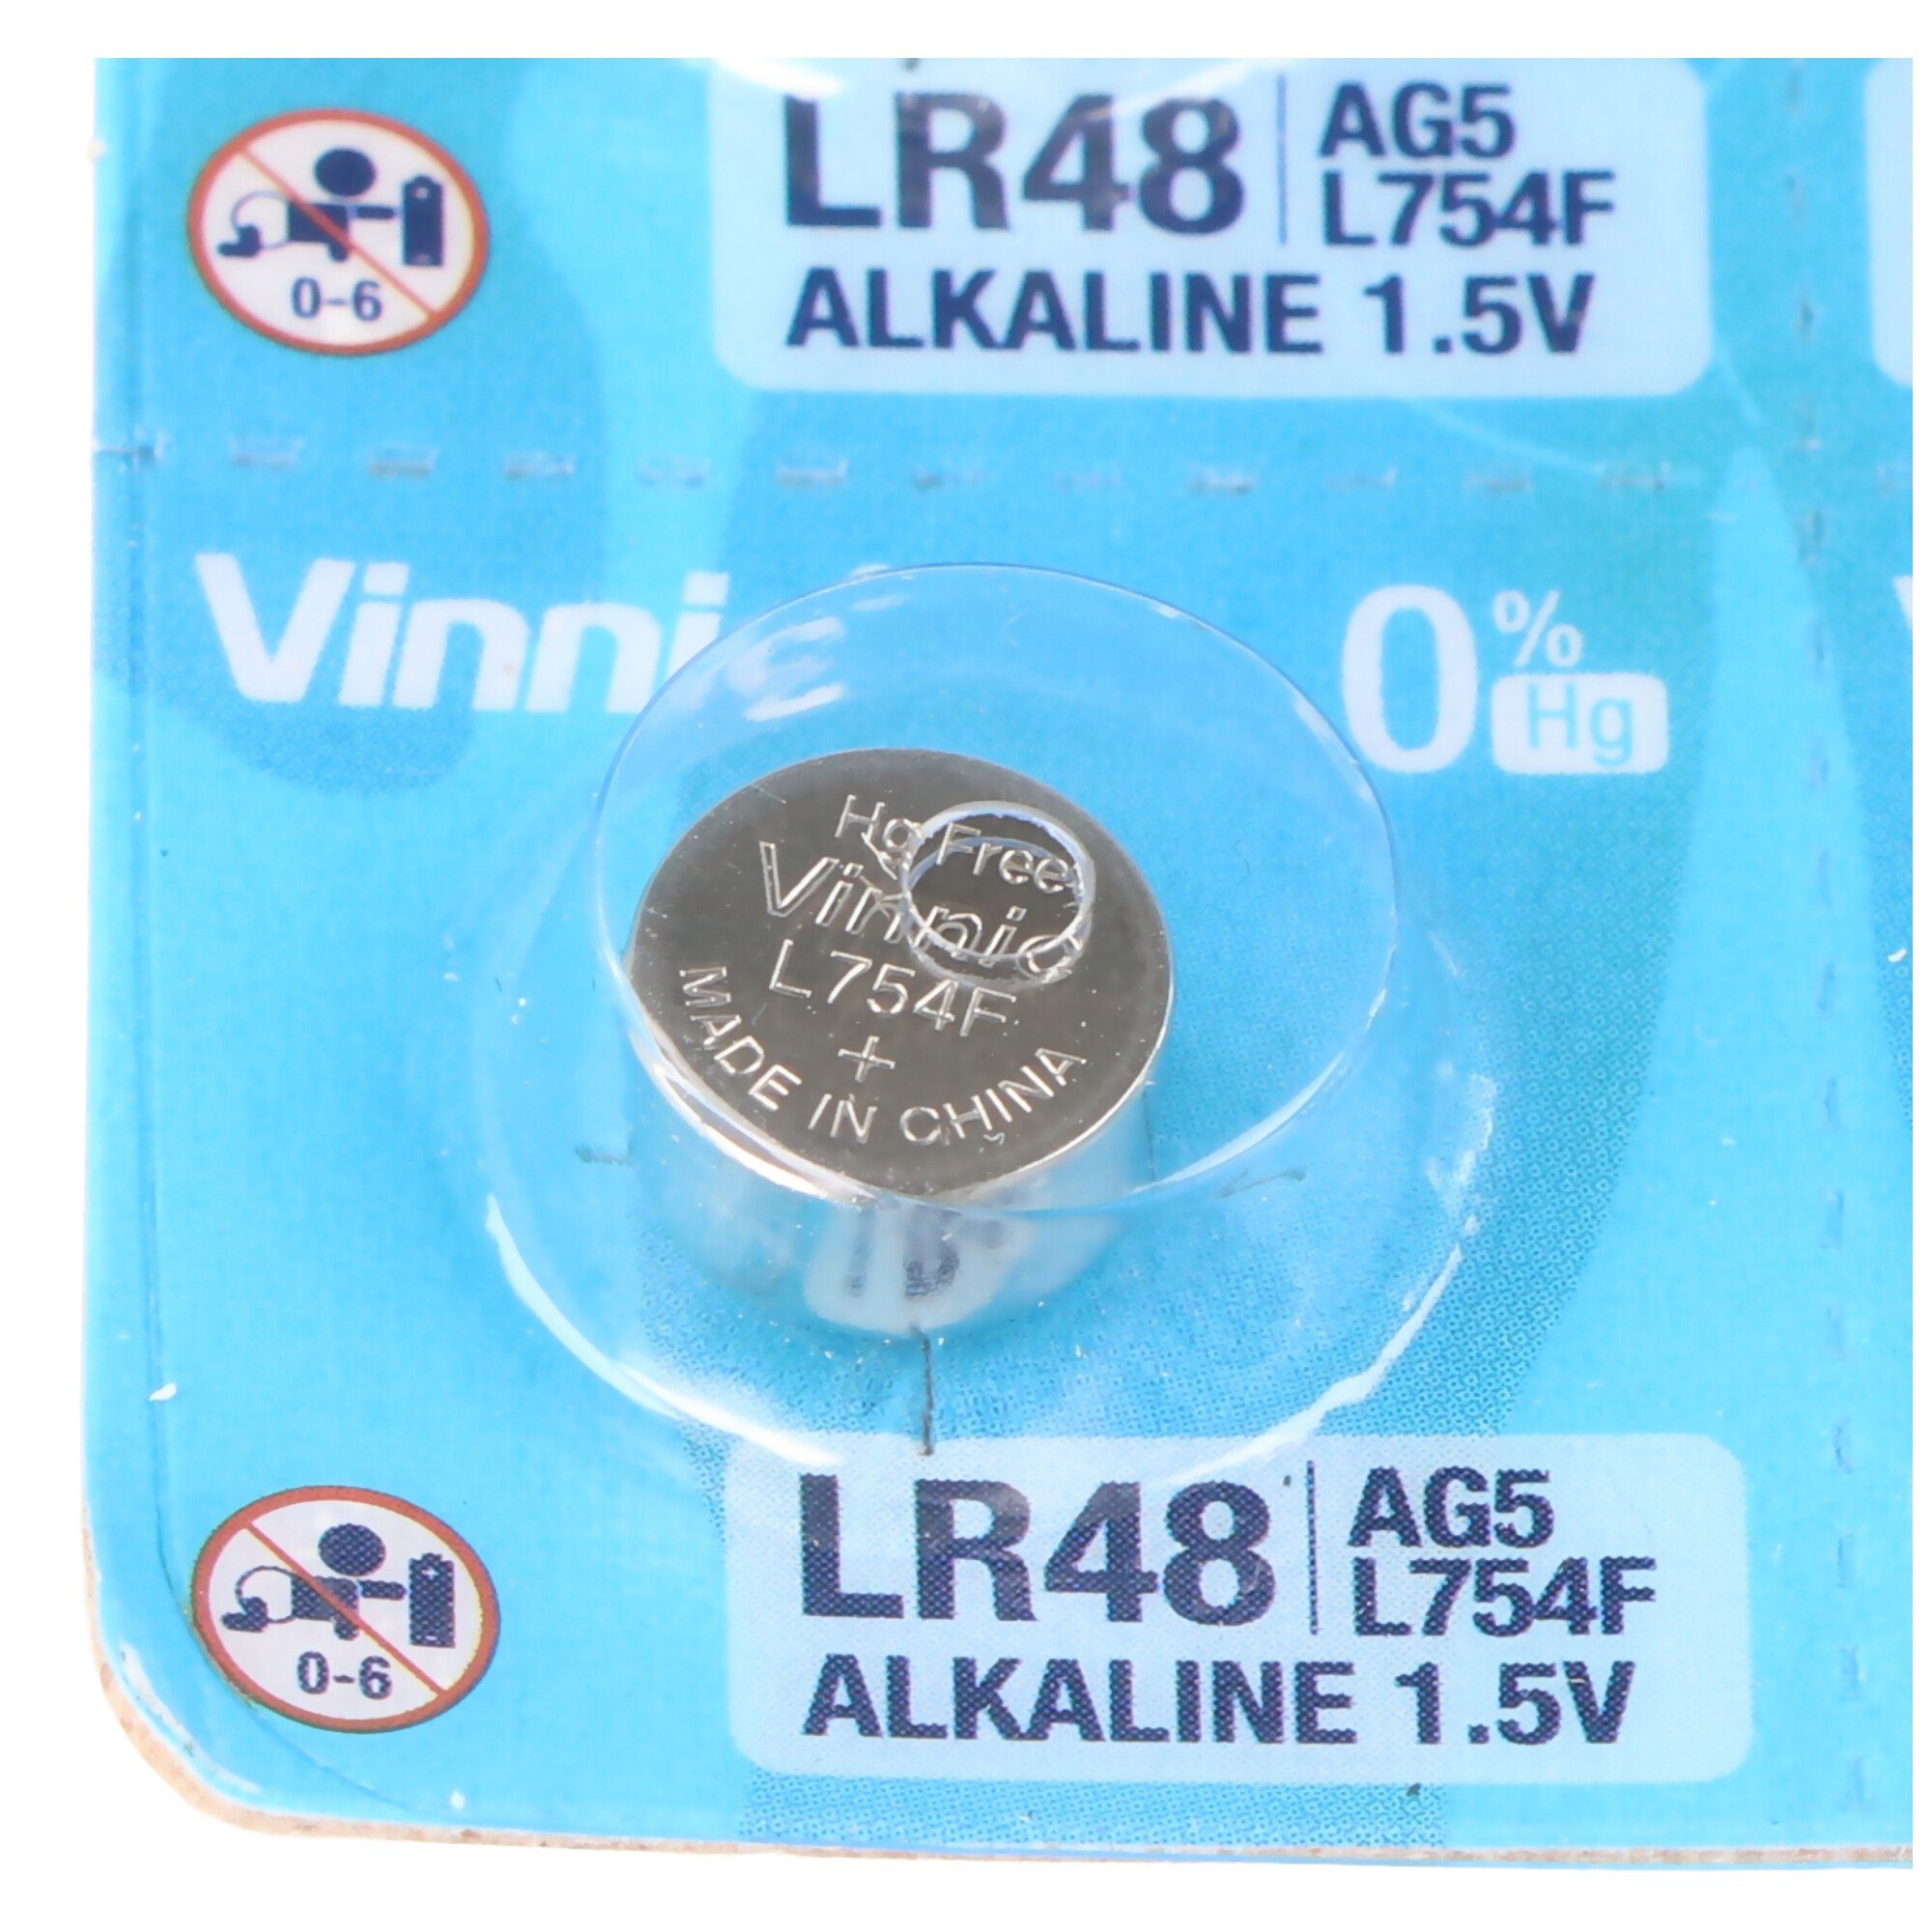 Stück AG5, 48, LR754 VINNIC 5, 10 AG Knopfzelle Knopfzellen LR LR48 G5, mini Vinnic Alk